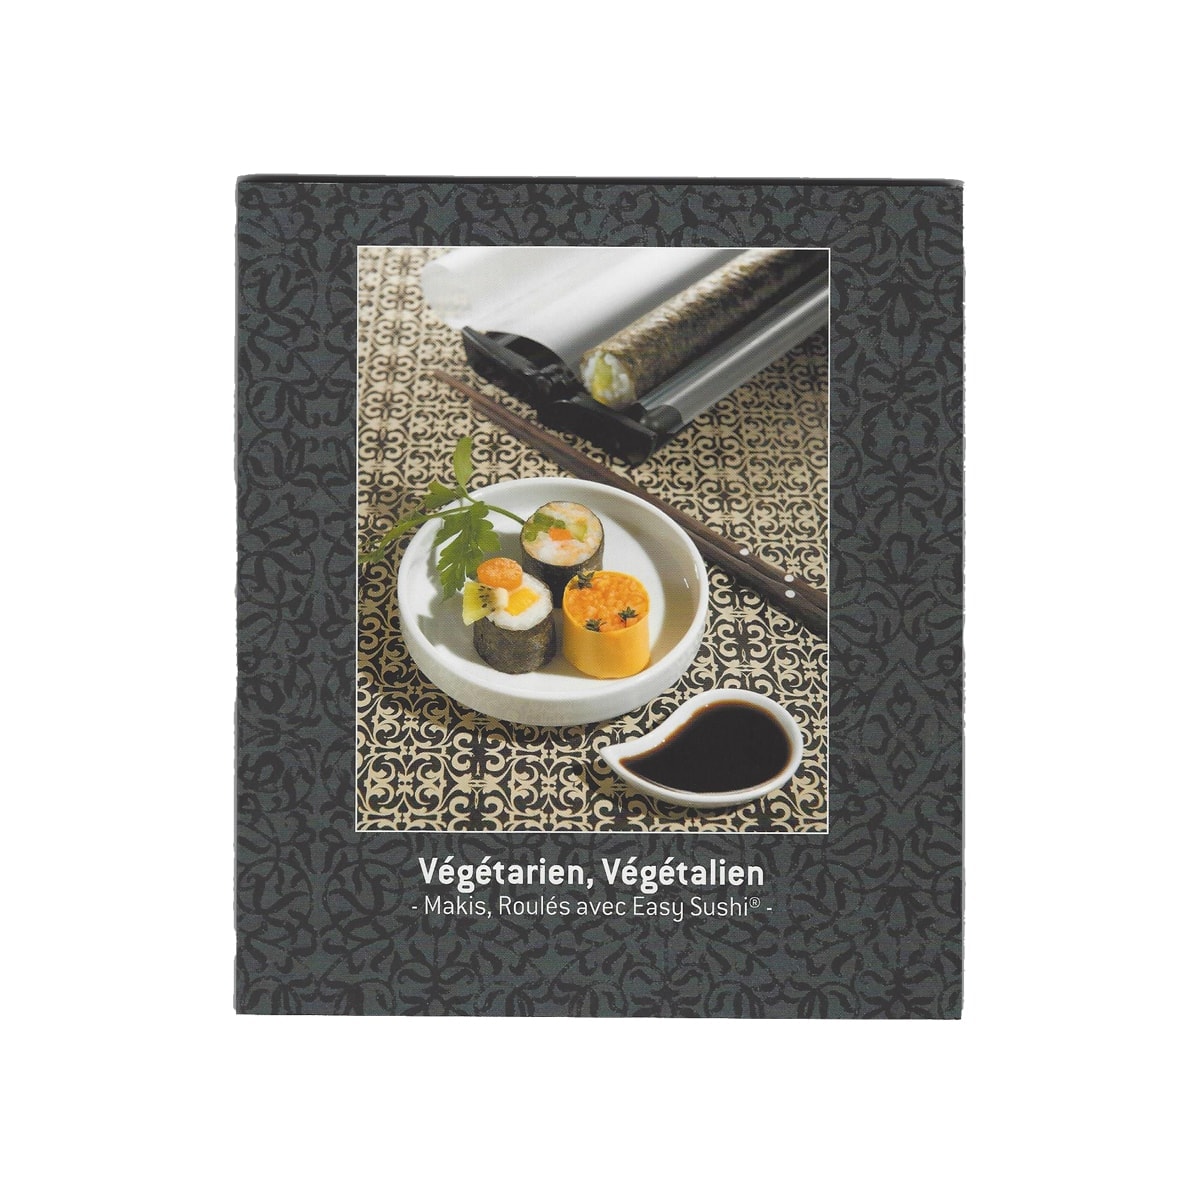 book-vegetarian-vegan-easy-sushi